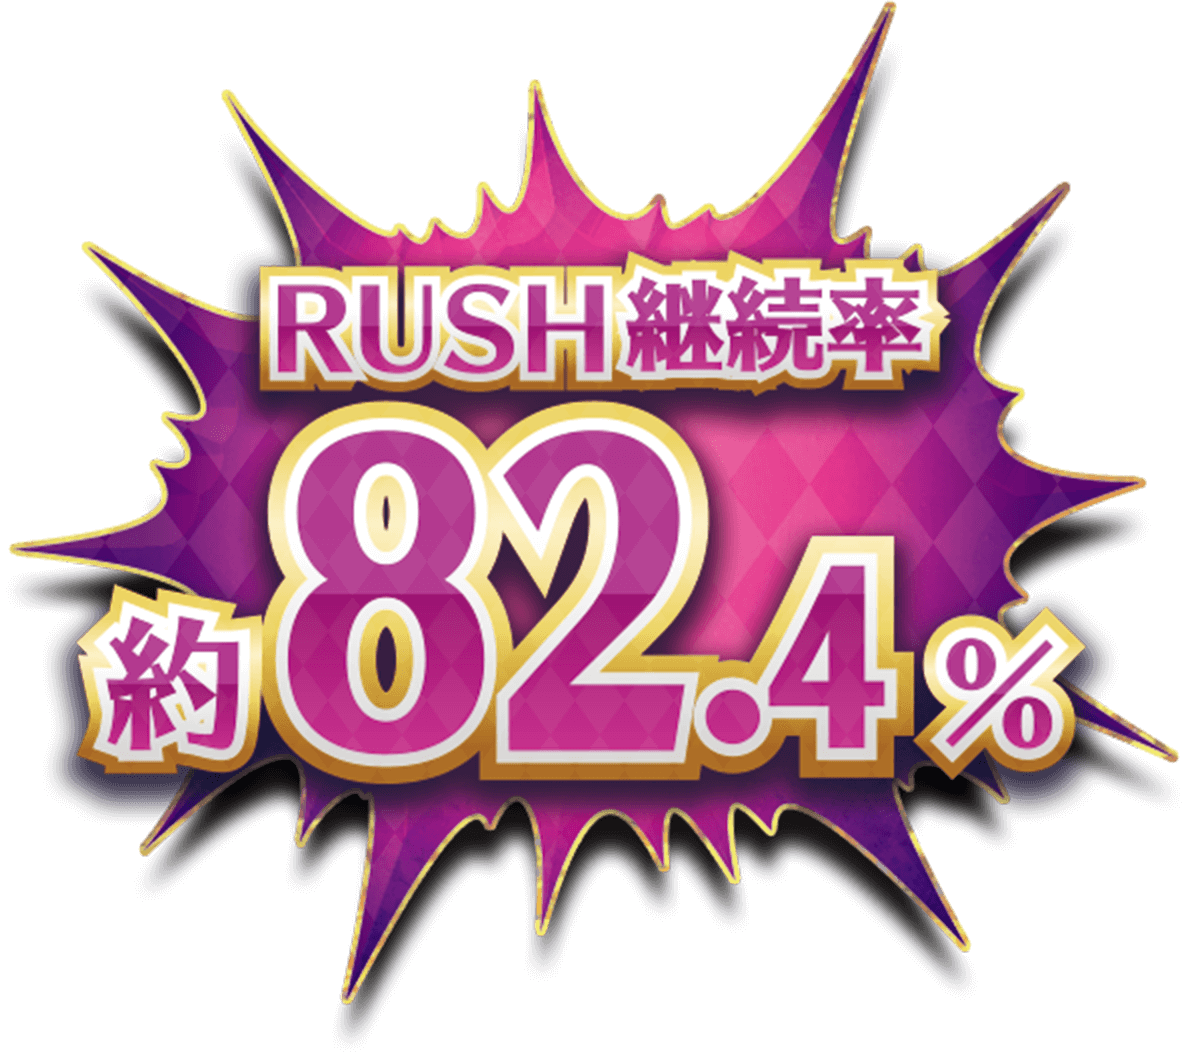 RUSH継続率約82.4%